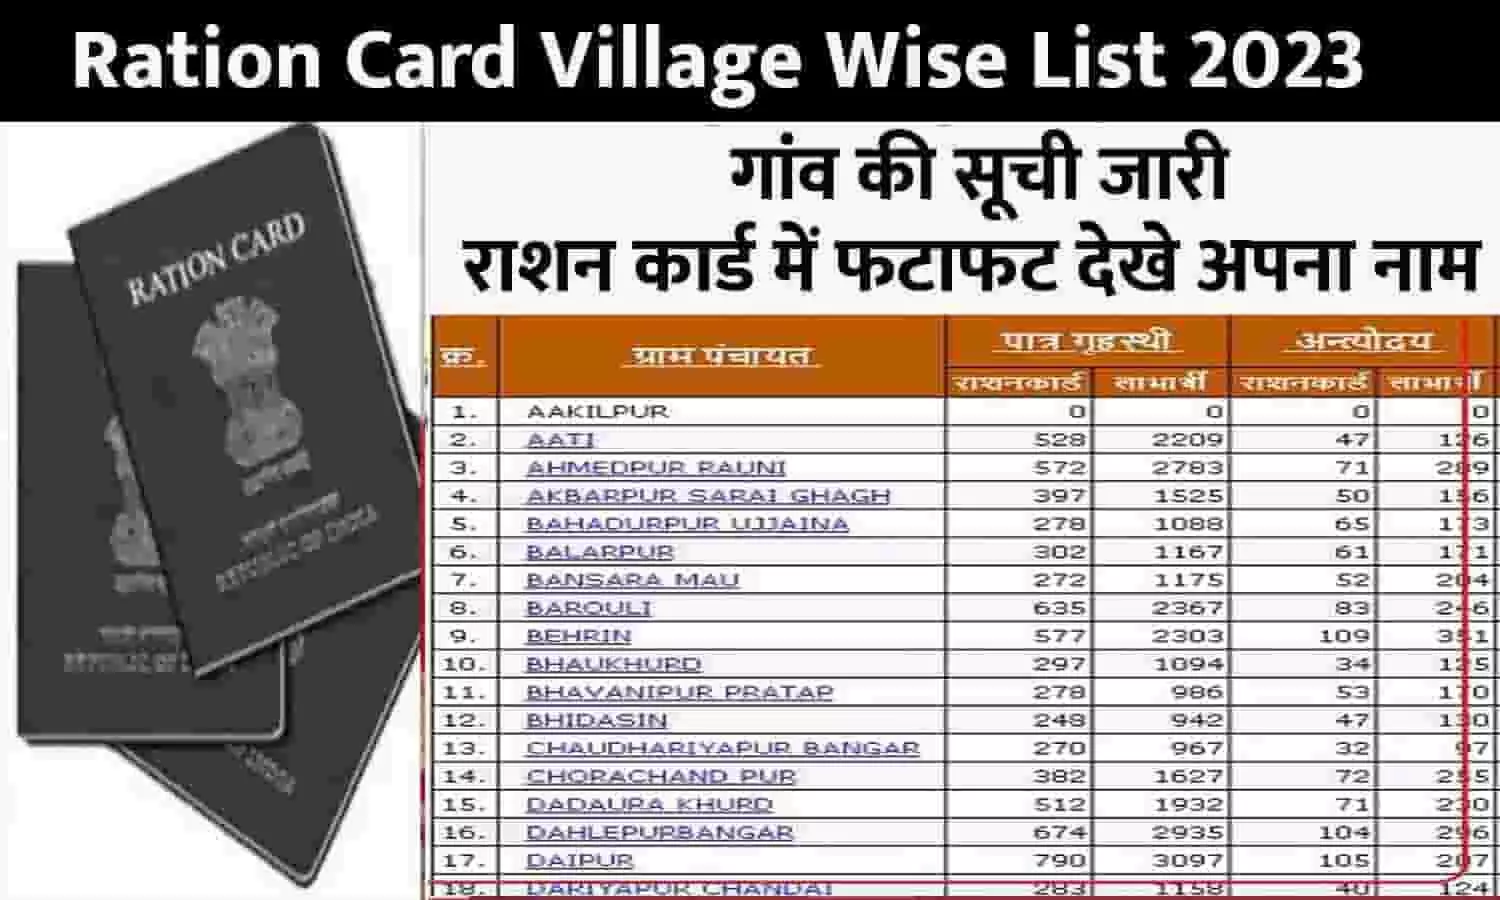 Ration Card Village Wise List 2023: गांव की सूची जारी, राशन कार्ड में फटाफट देखे अपना नाम